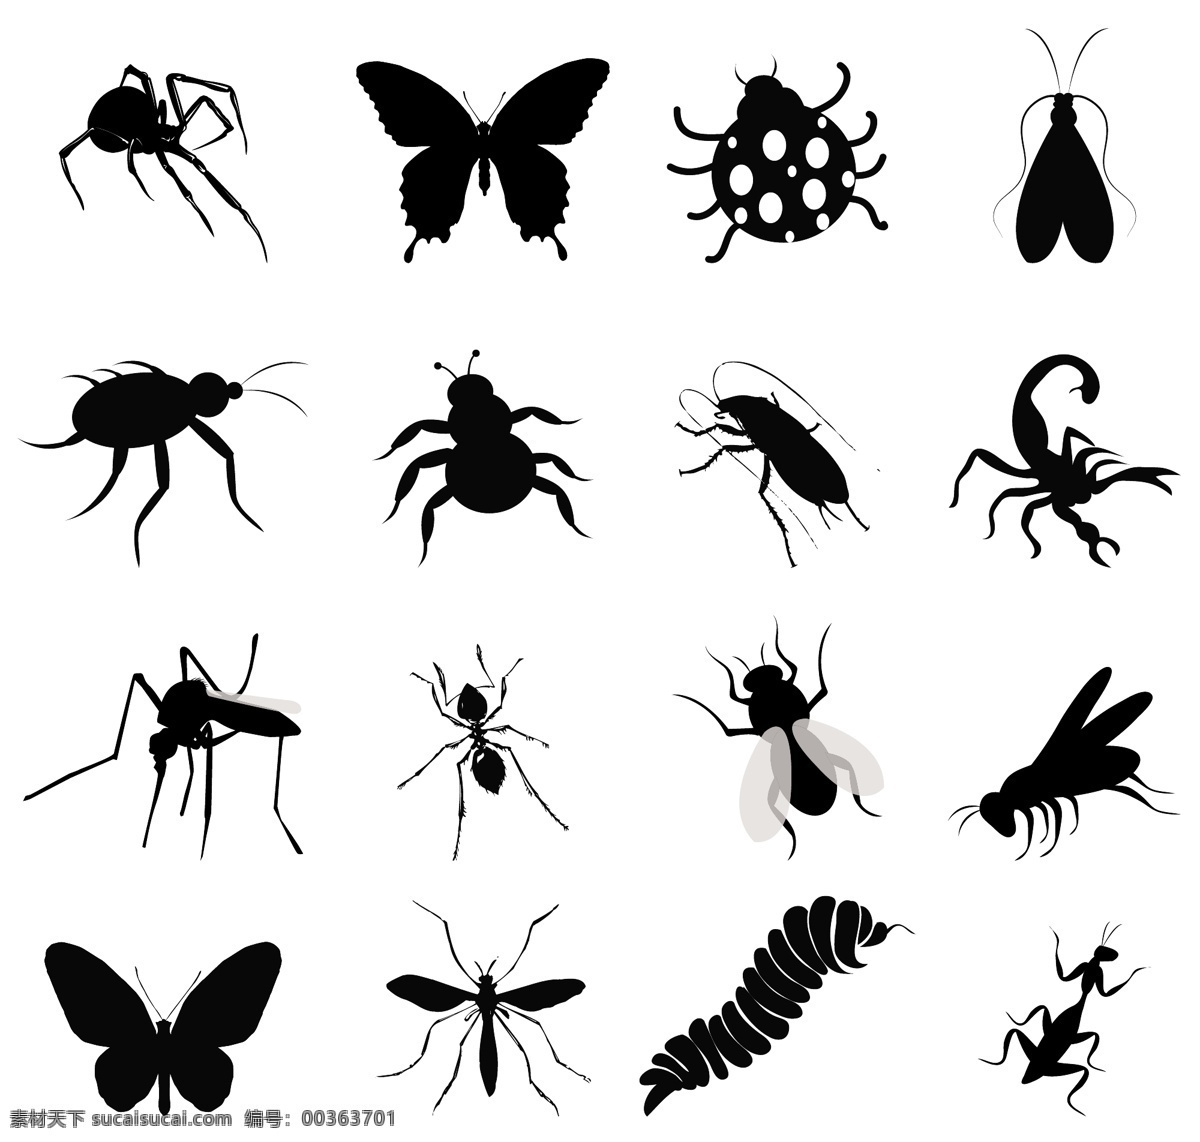 昆虫剪影 剪影 动物剪影 动物 昆虫 小蜜蜂 蜜蜂剪影素材 飞行 翅膀 生物世界